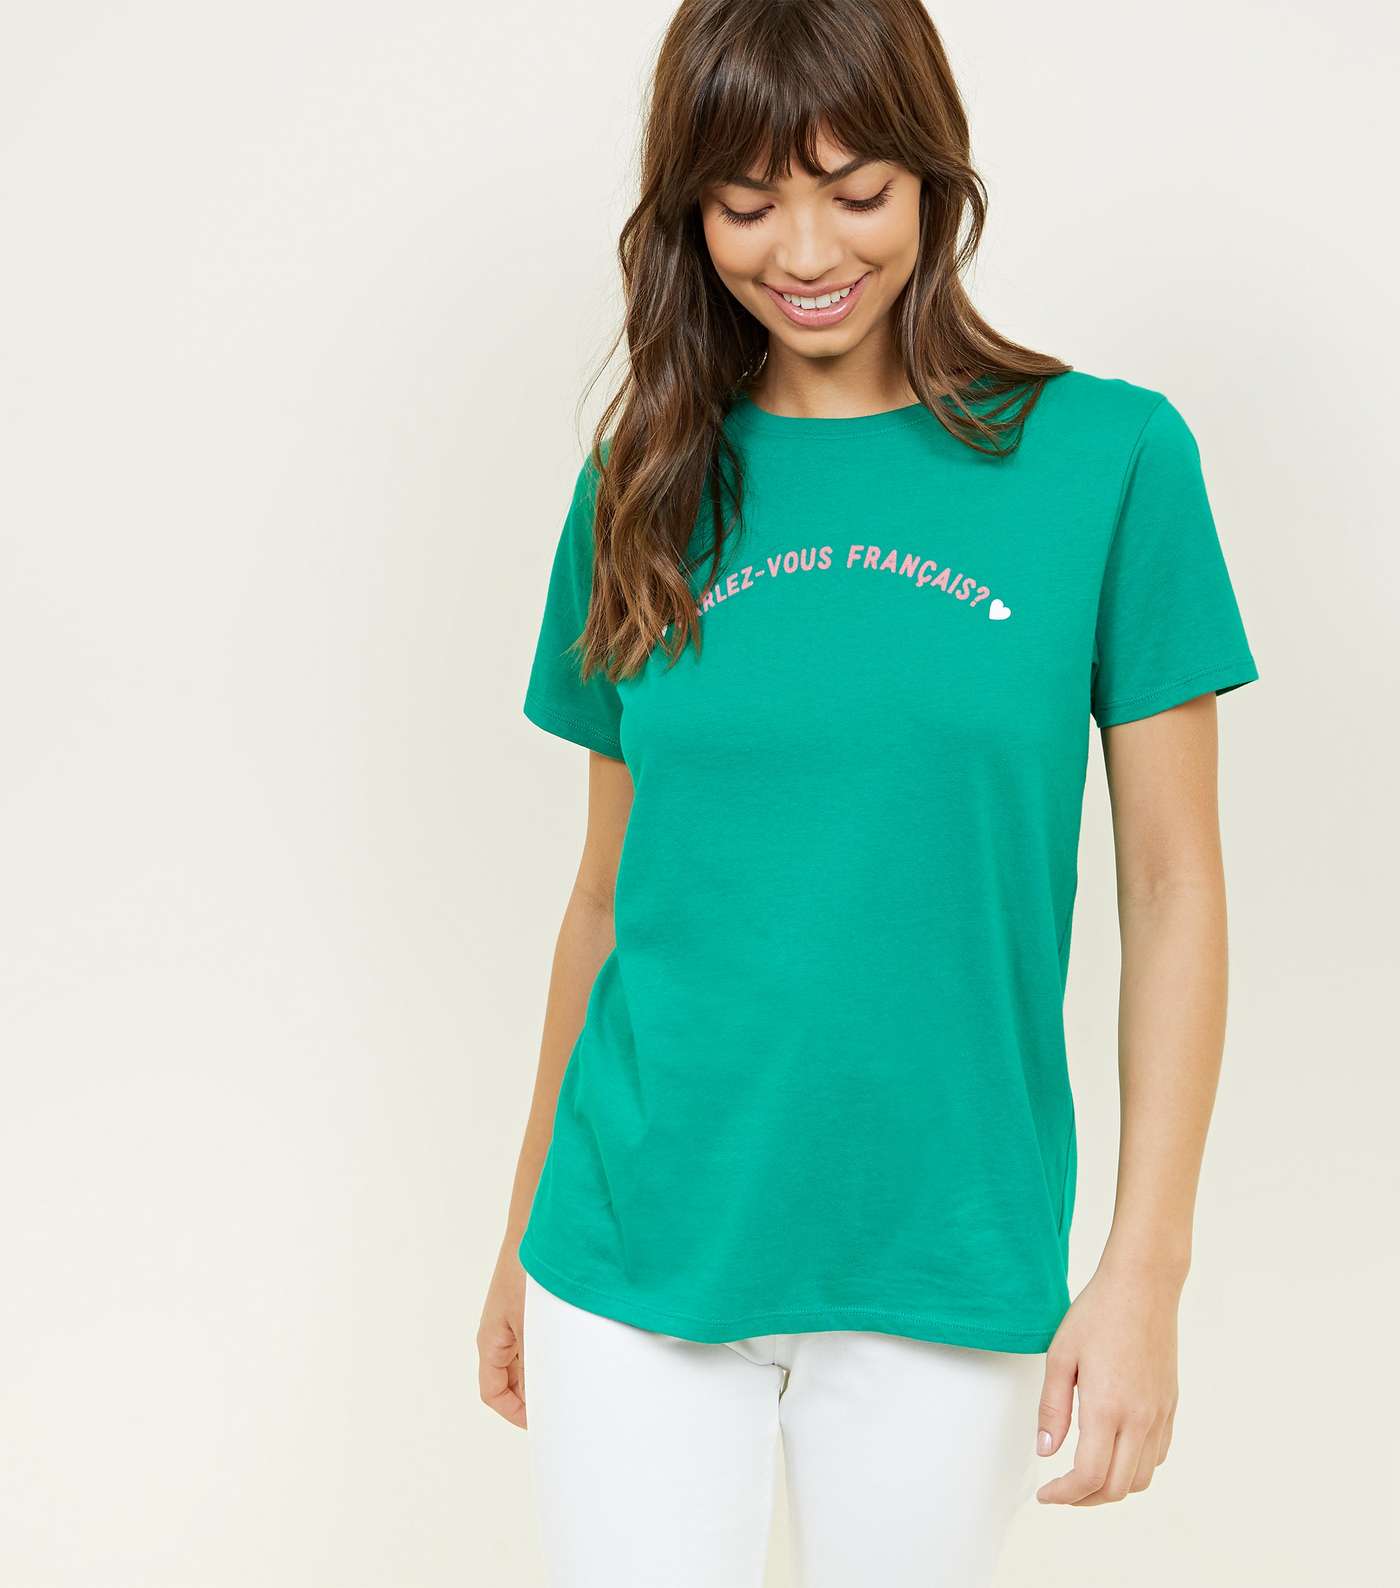 Green Parlez-Vous Français? Slogan T-Shirt